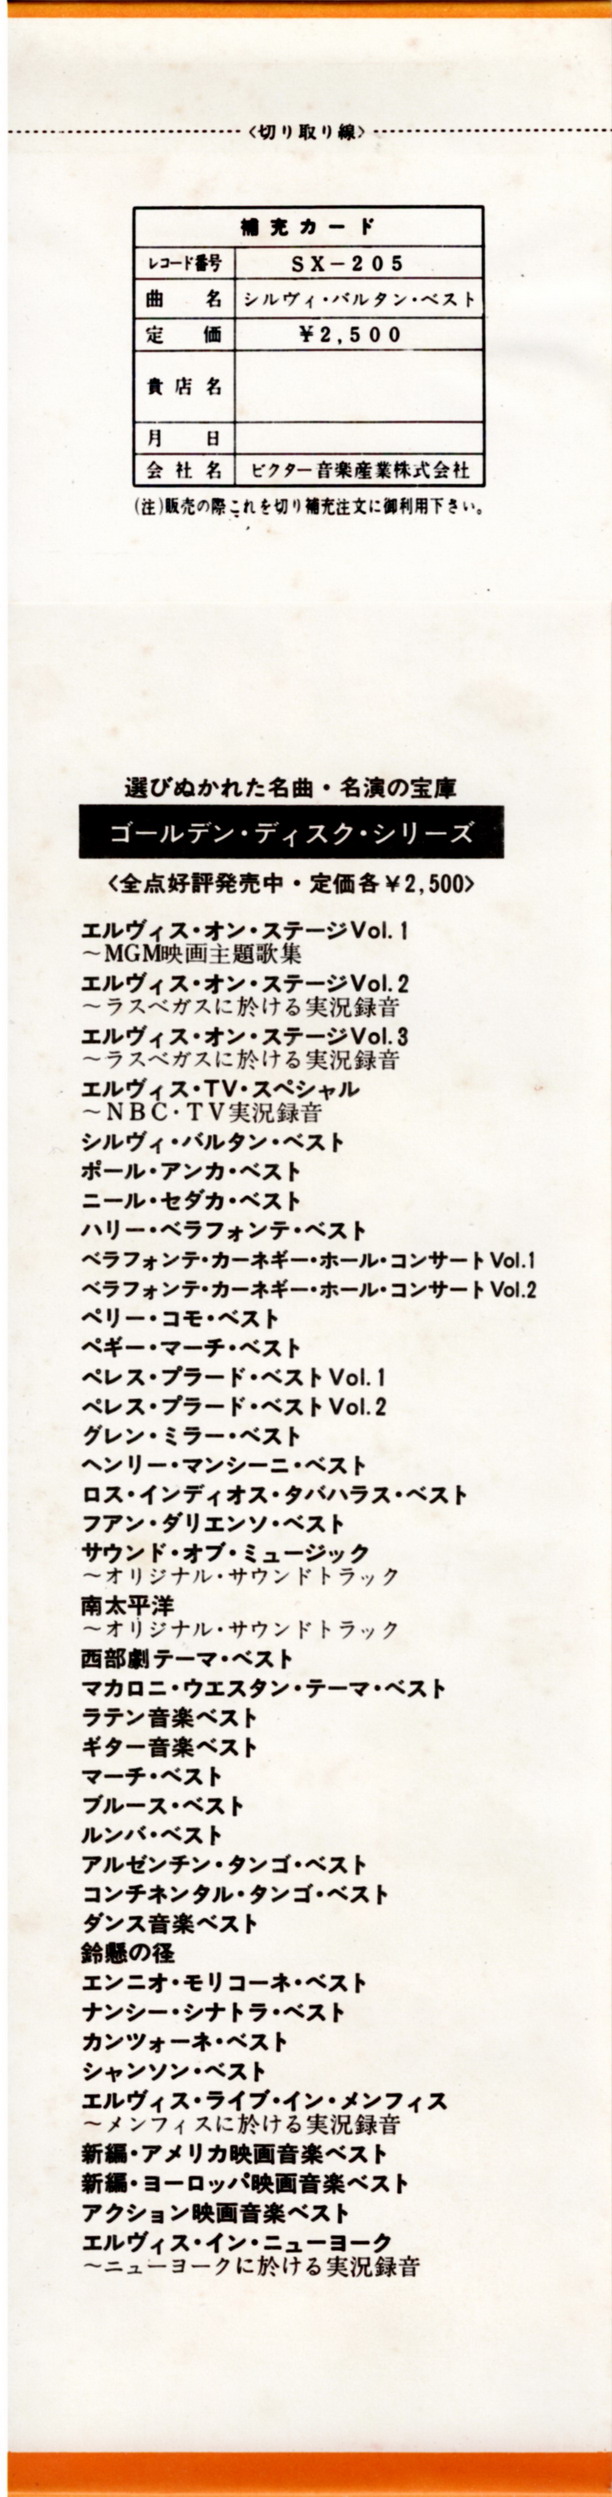 Discographie Japonaise - 4ème partie (33 T COMPILATION) - Page 10 Jpn_3133